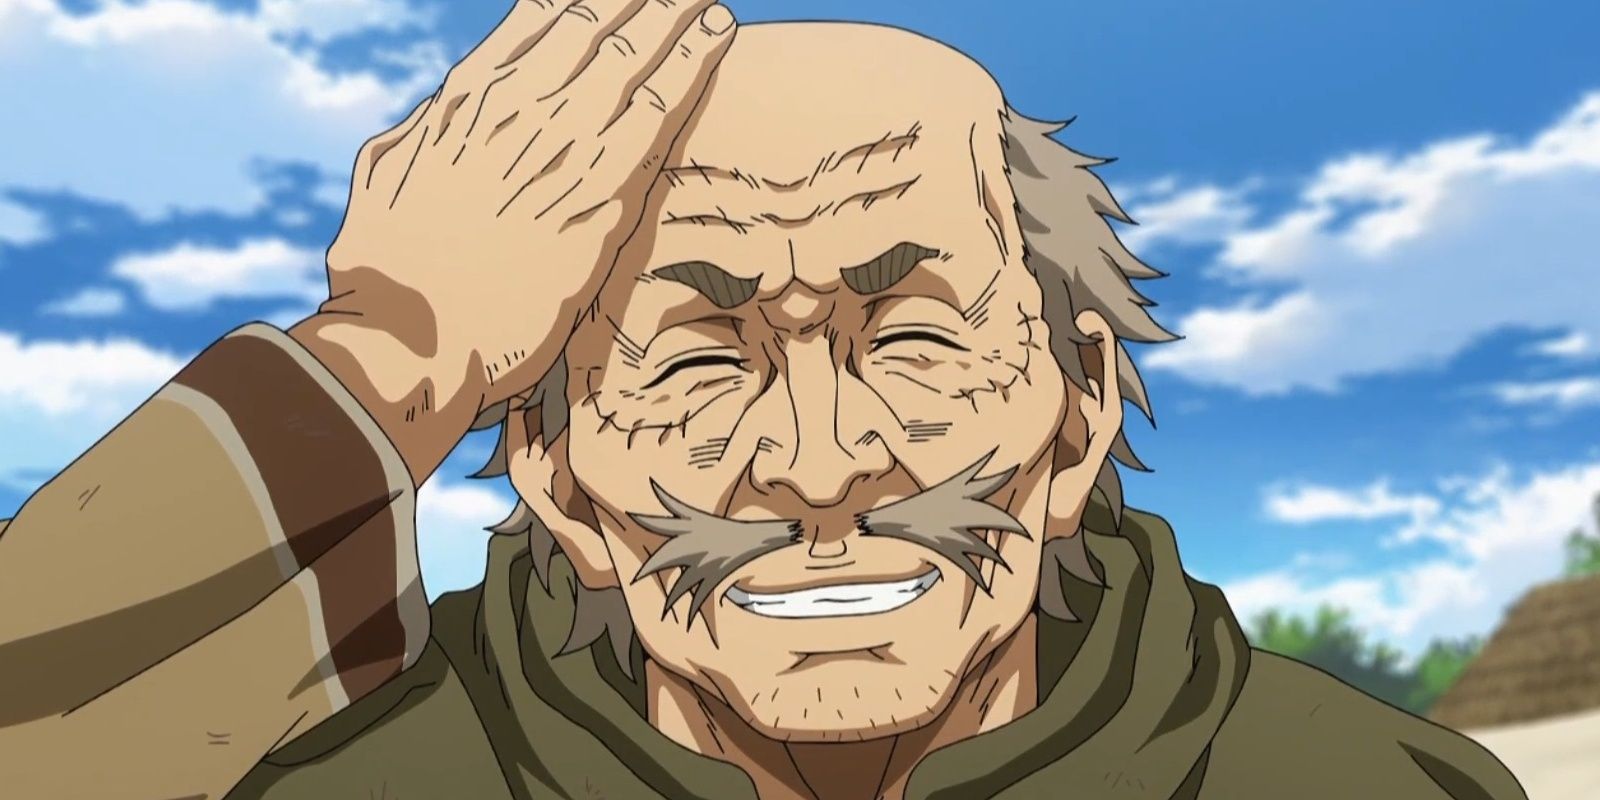 leif ericson is elderly in the vinland saga anime